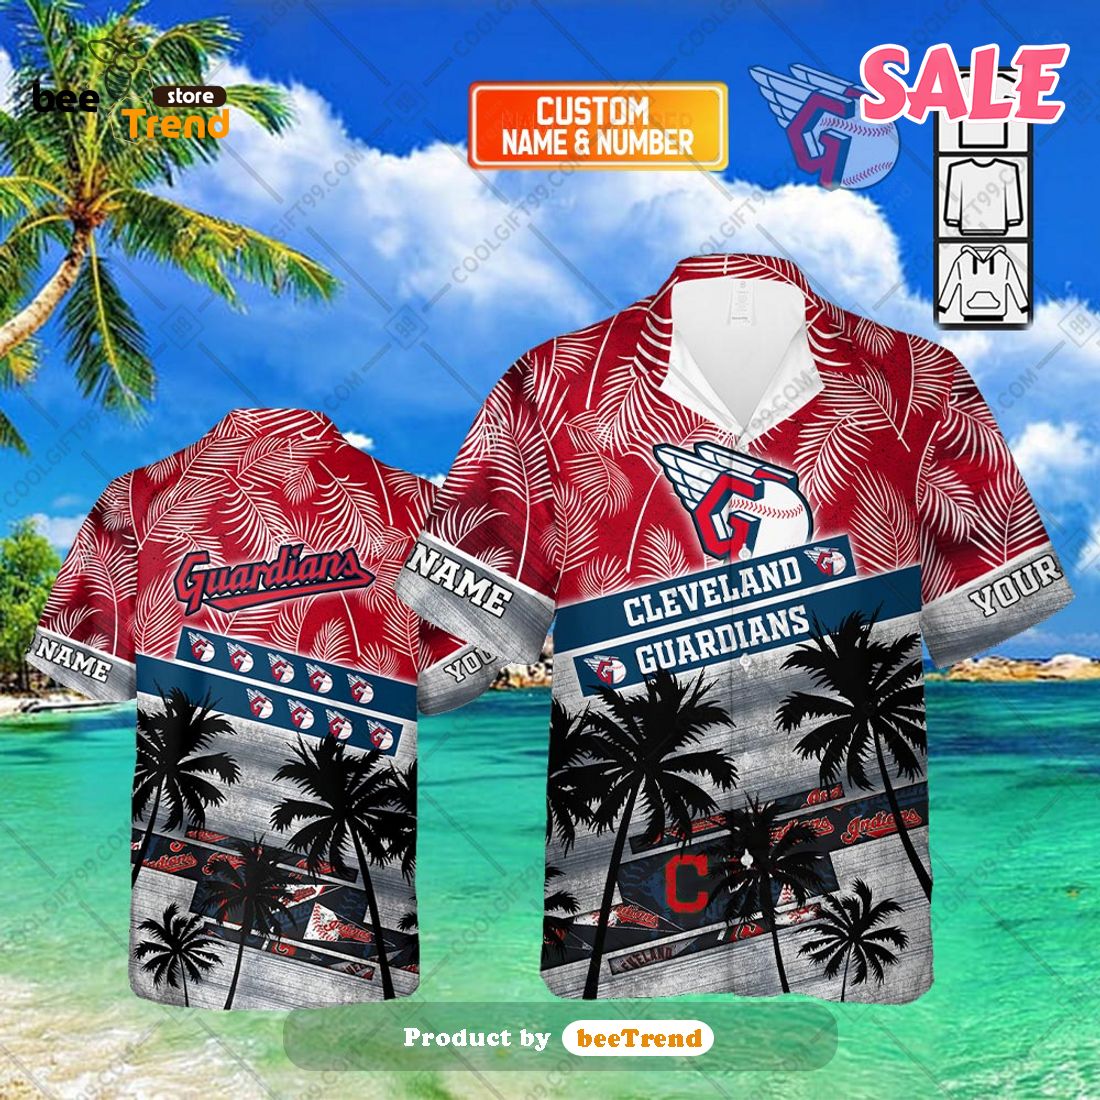 Miami Marlins MLB Trending Hawaiian Shirt And Shorts For Fans